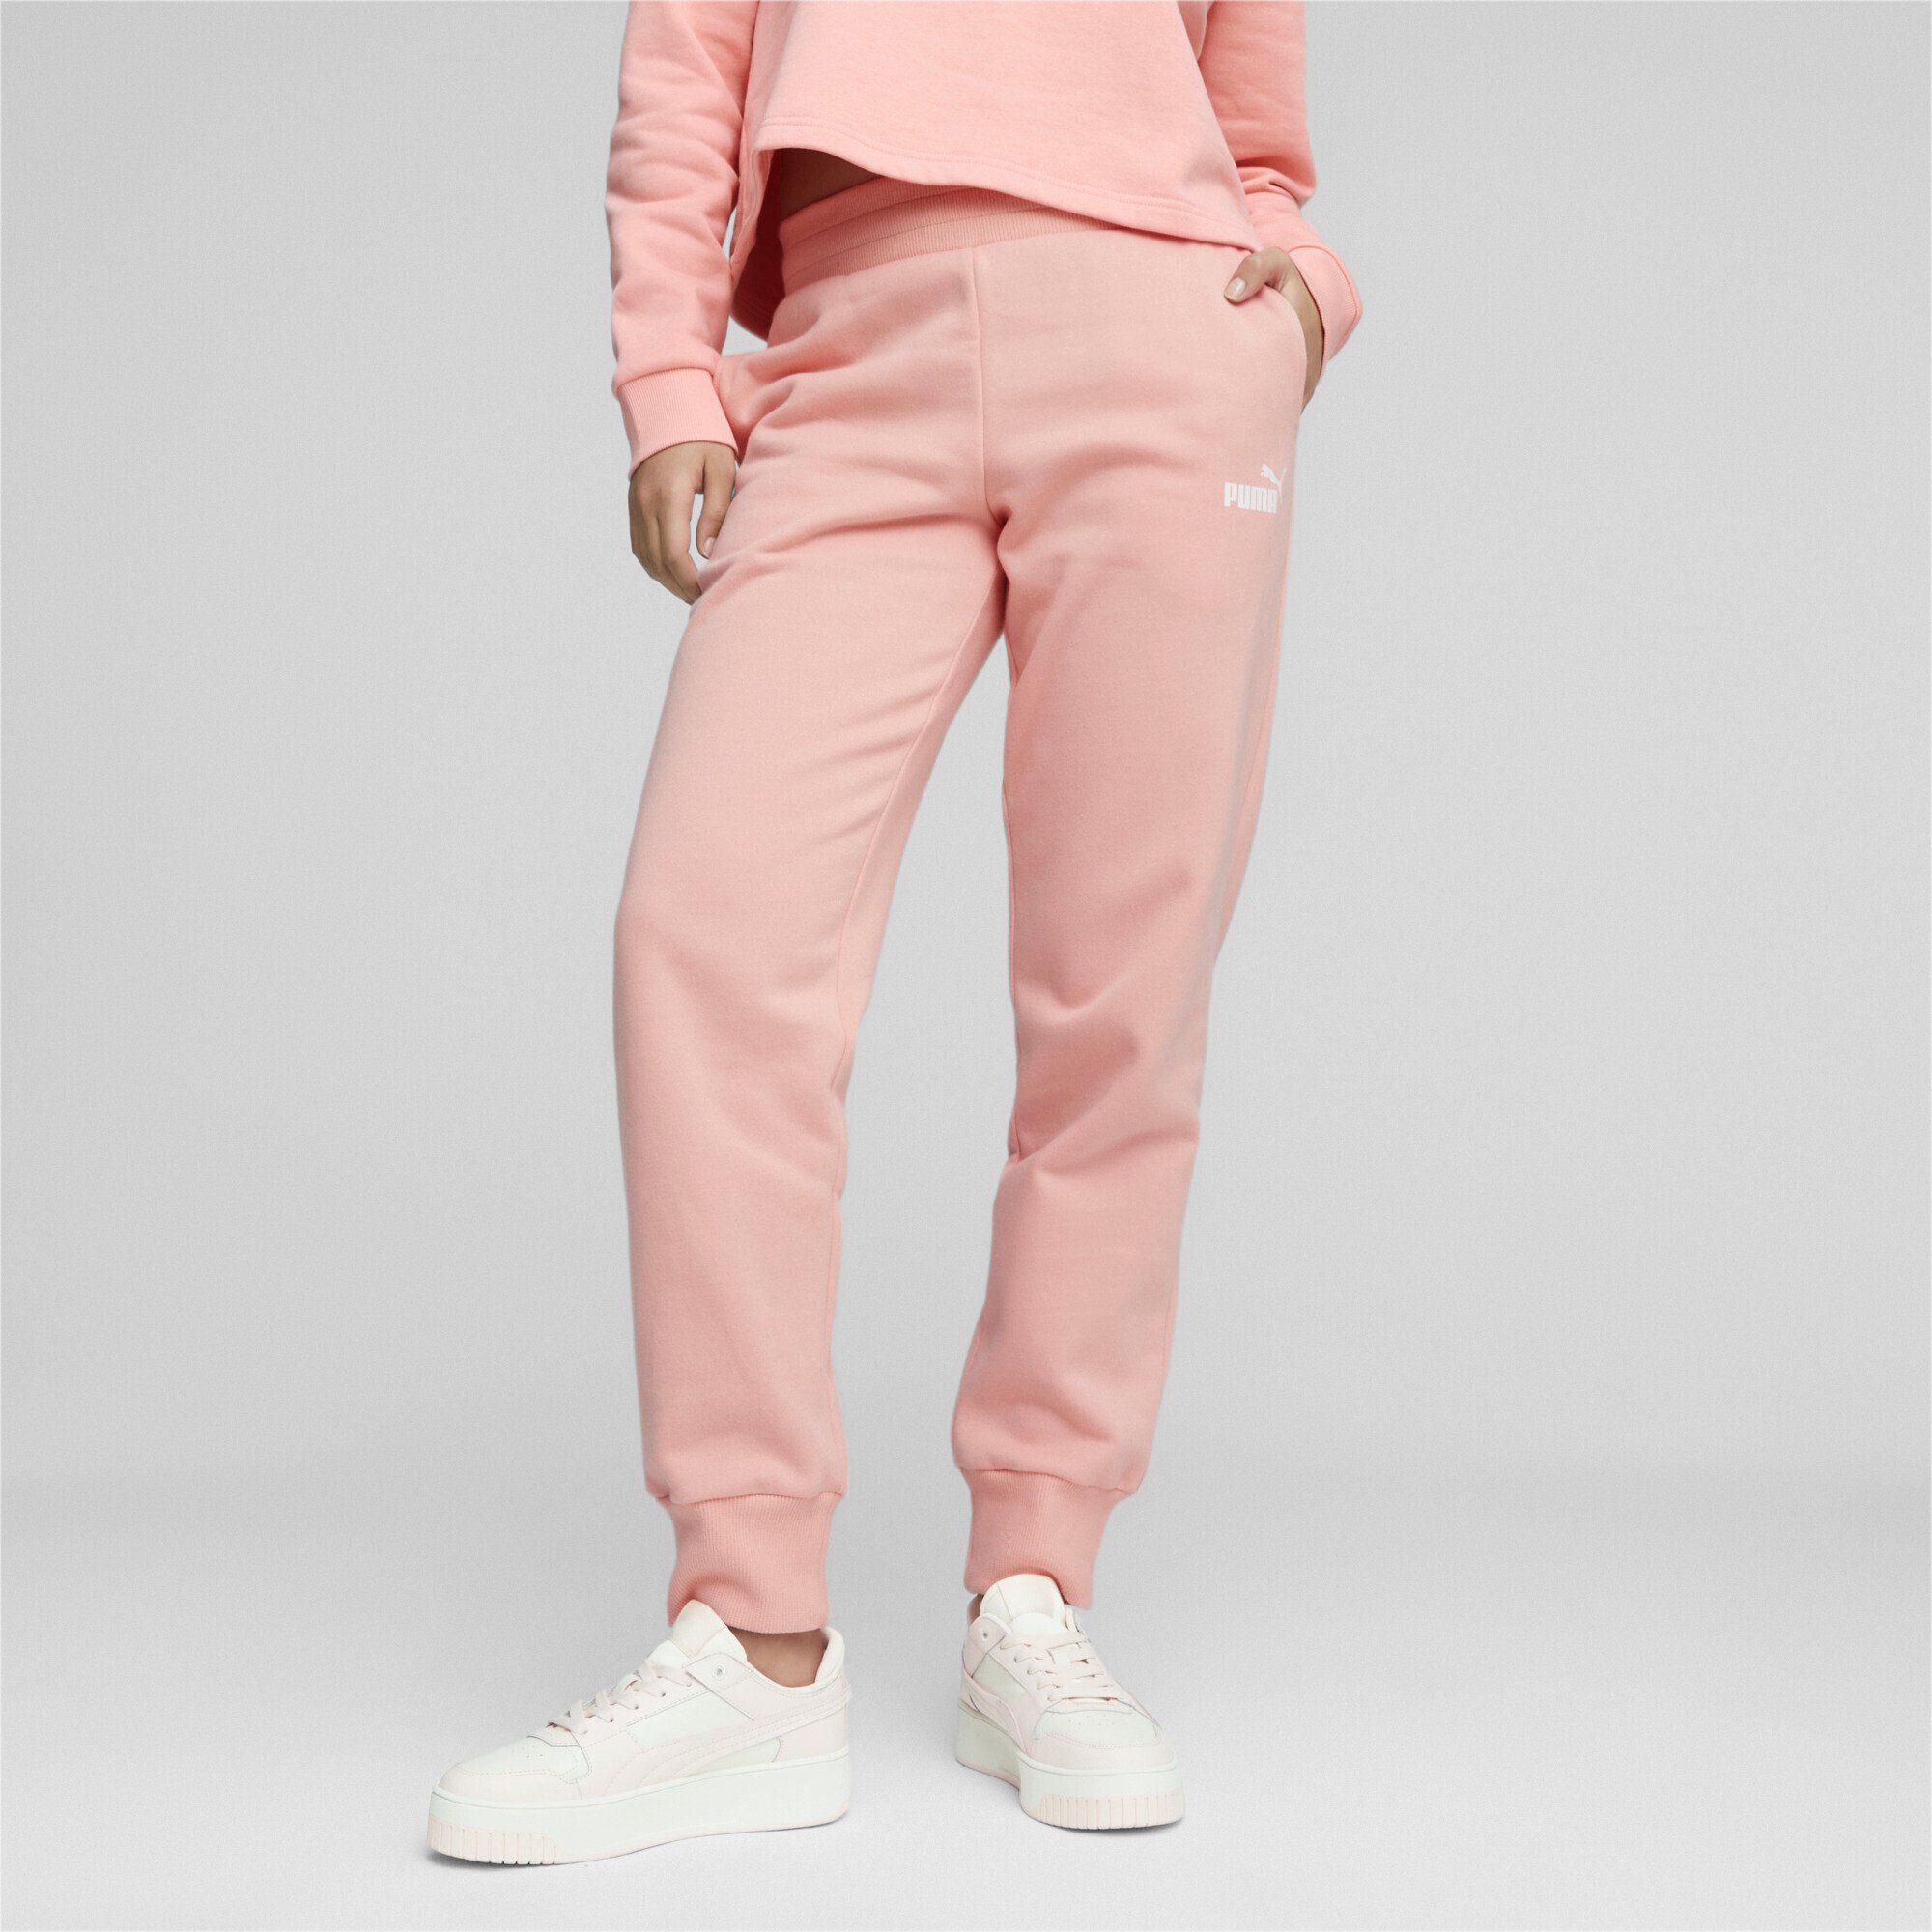 Pink PUMA Smoothie Jogginghose Peach Damen Essentials Sporthose